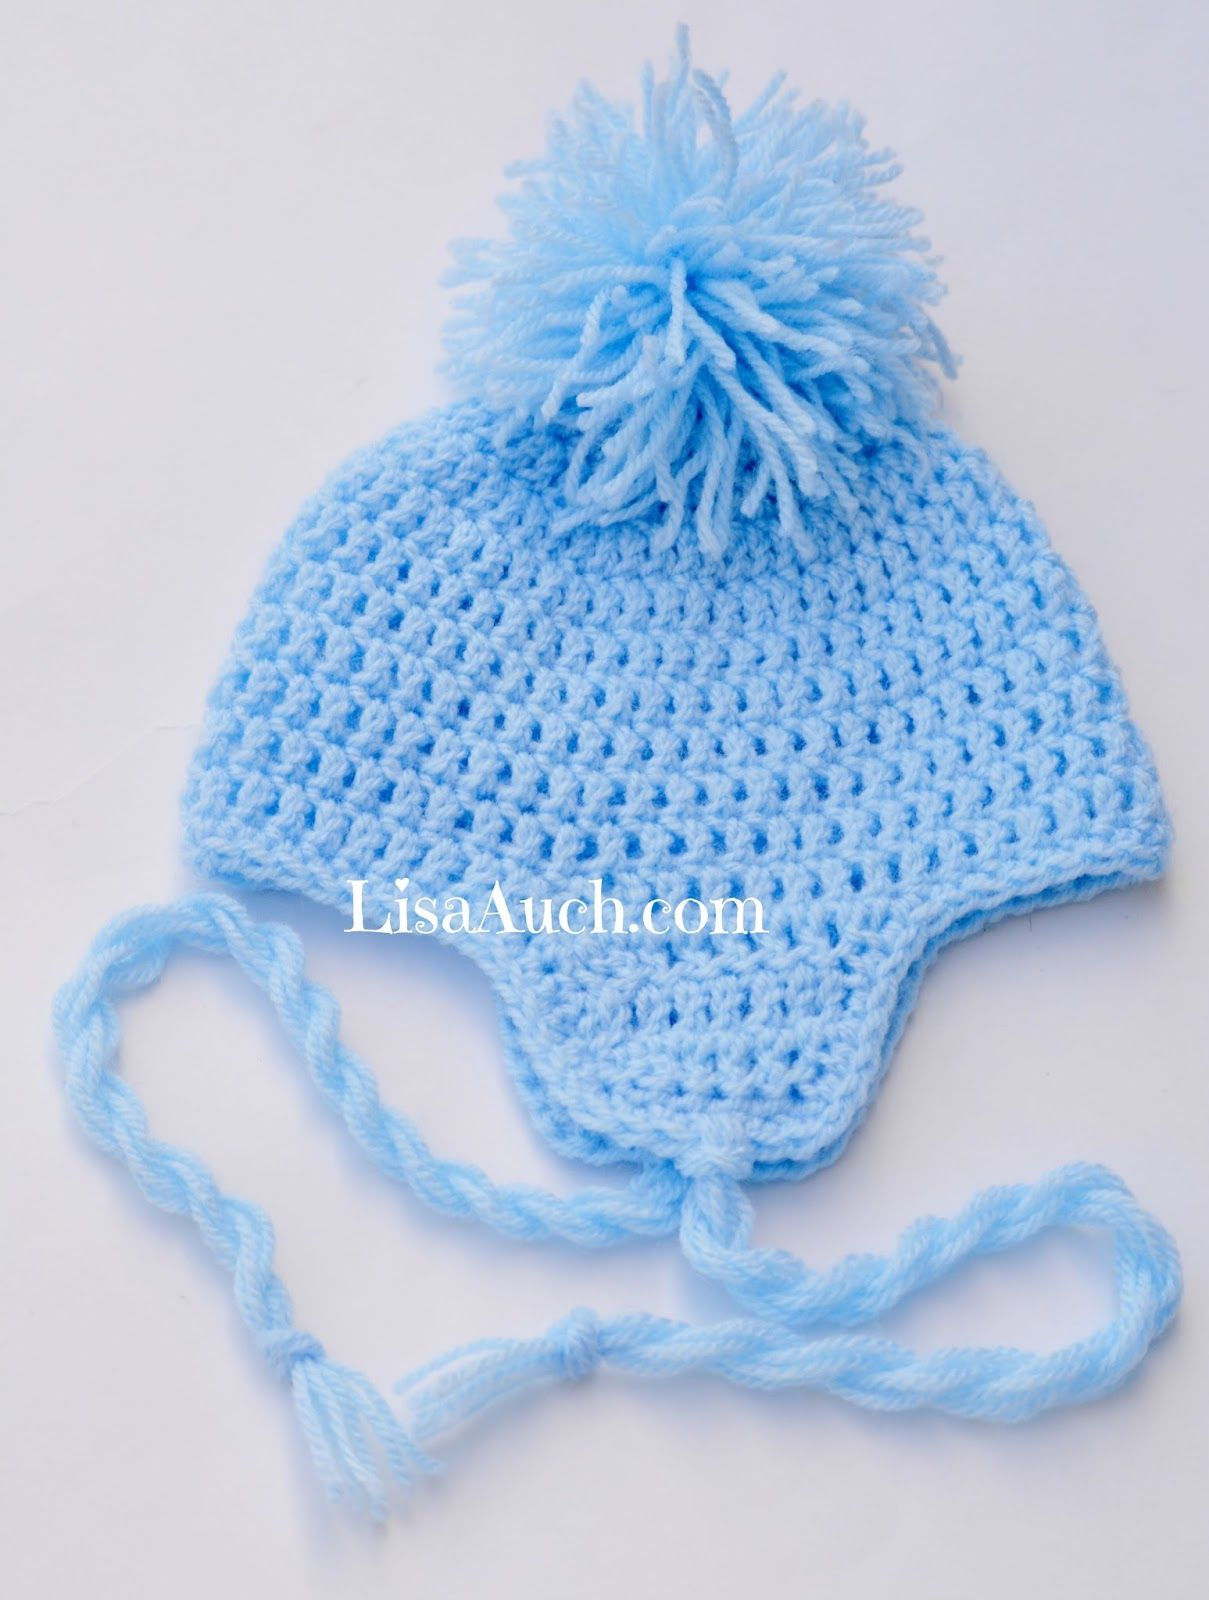 Crochet Newborn Hat Pattern Free Crochet Ba Hat Pattern With Earflaps Blanket Pinterest